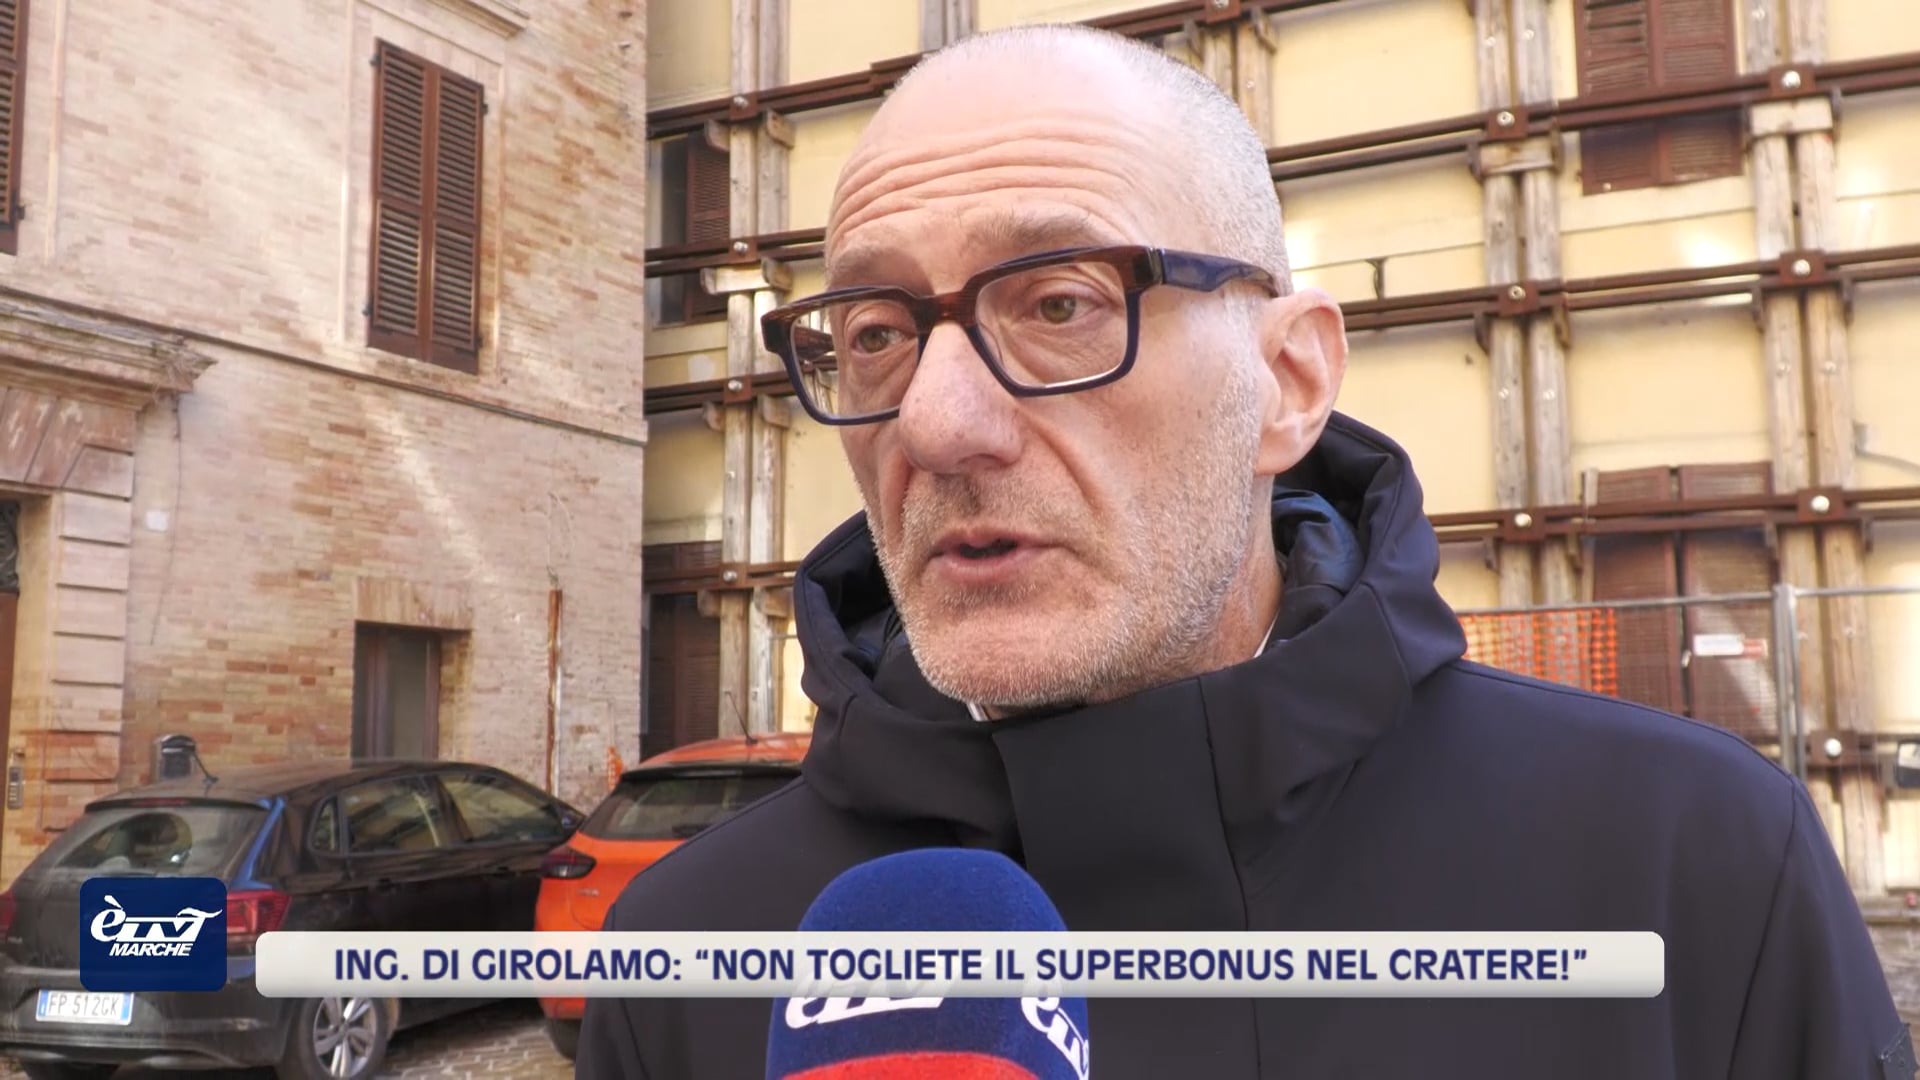 Ing. Di Girolamo: “Non togliete il Superbonus nel cratere!” - VIDEO